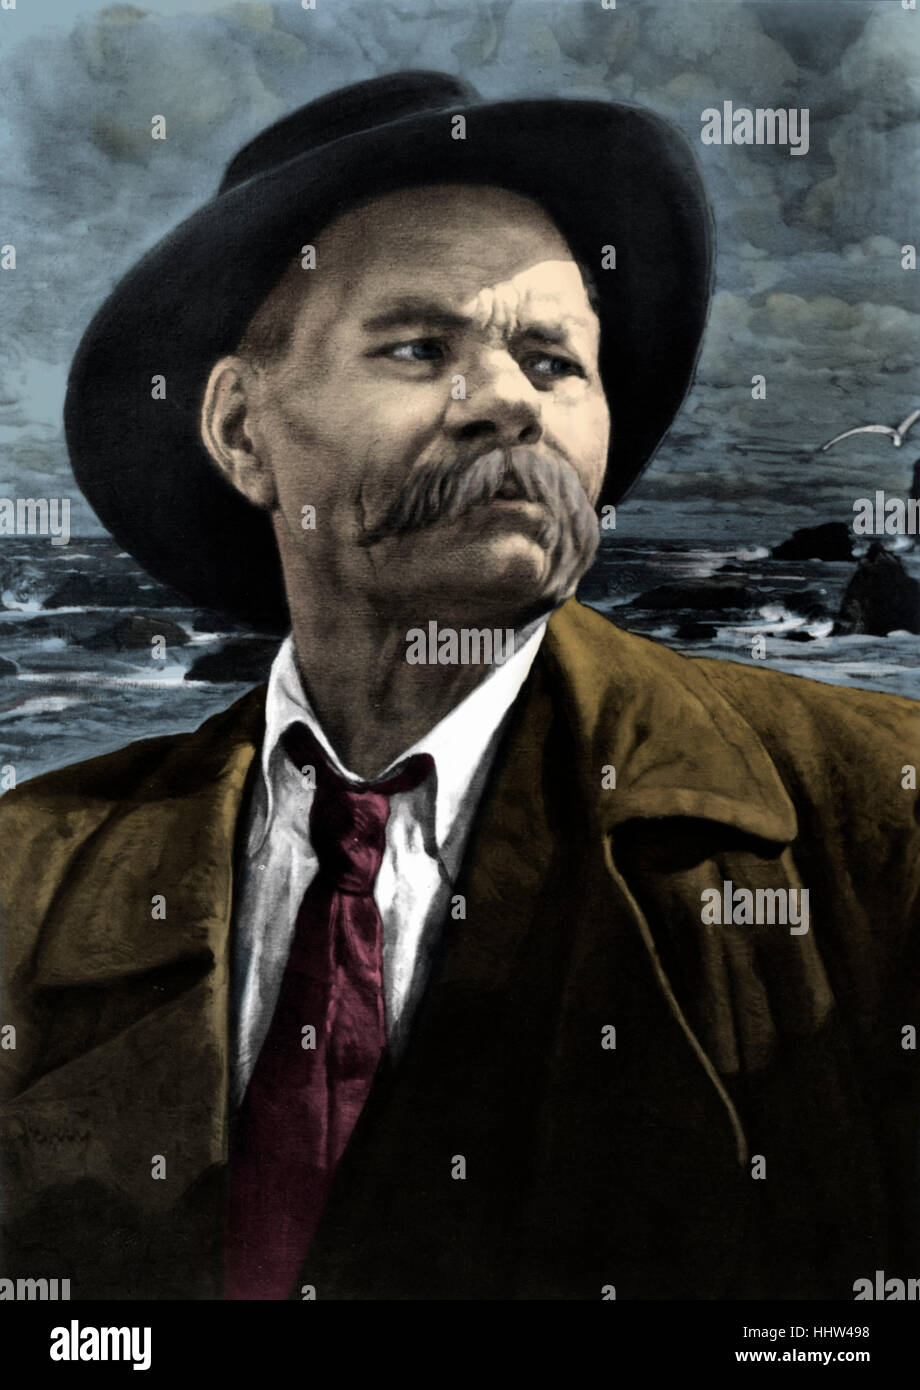 Alexeï Maximovitch / Maxime Gorki - portrait de l'écrivain russe. Gorki. 28 mars 1868 - 14 juin 1936. Peint par Isaac Banque D'Images